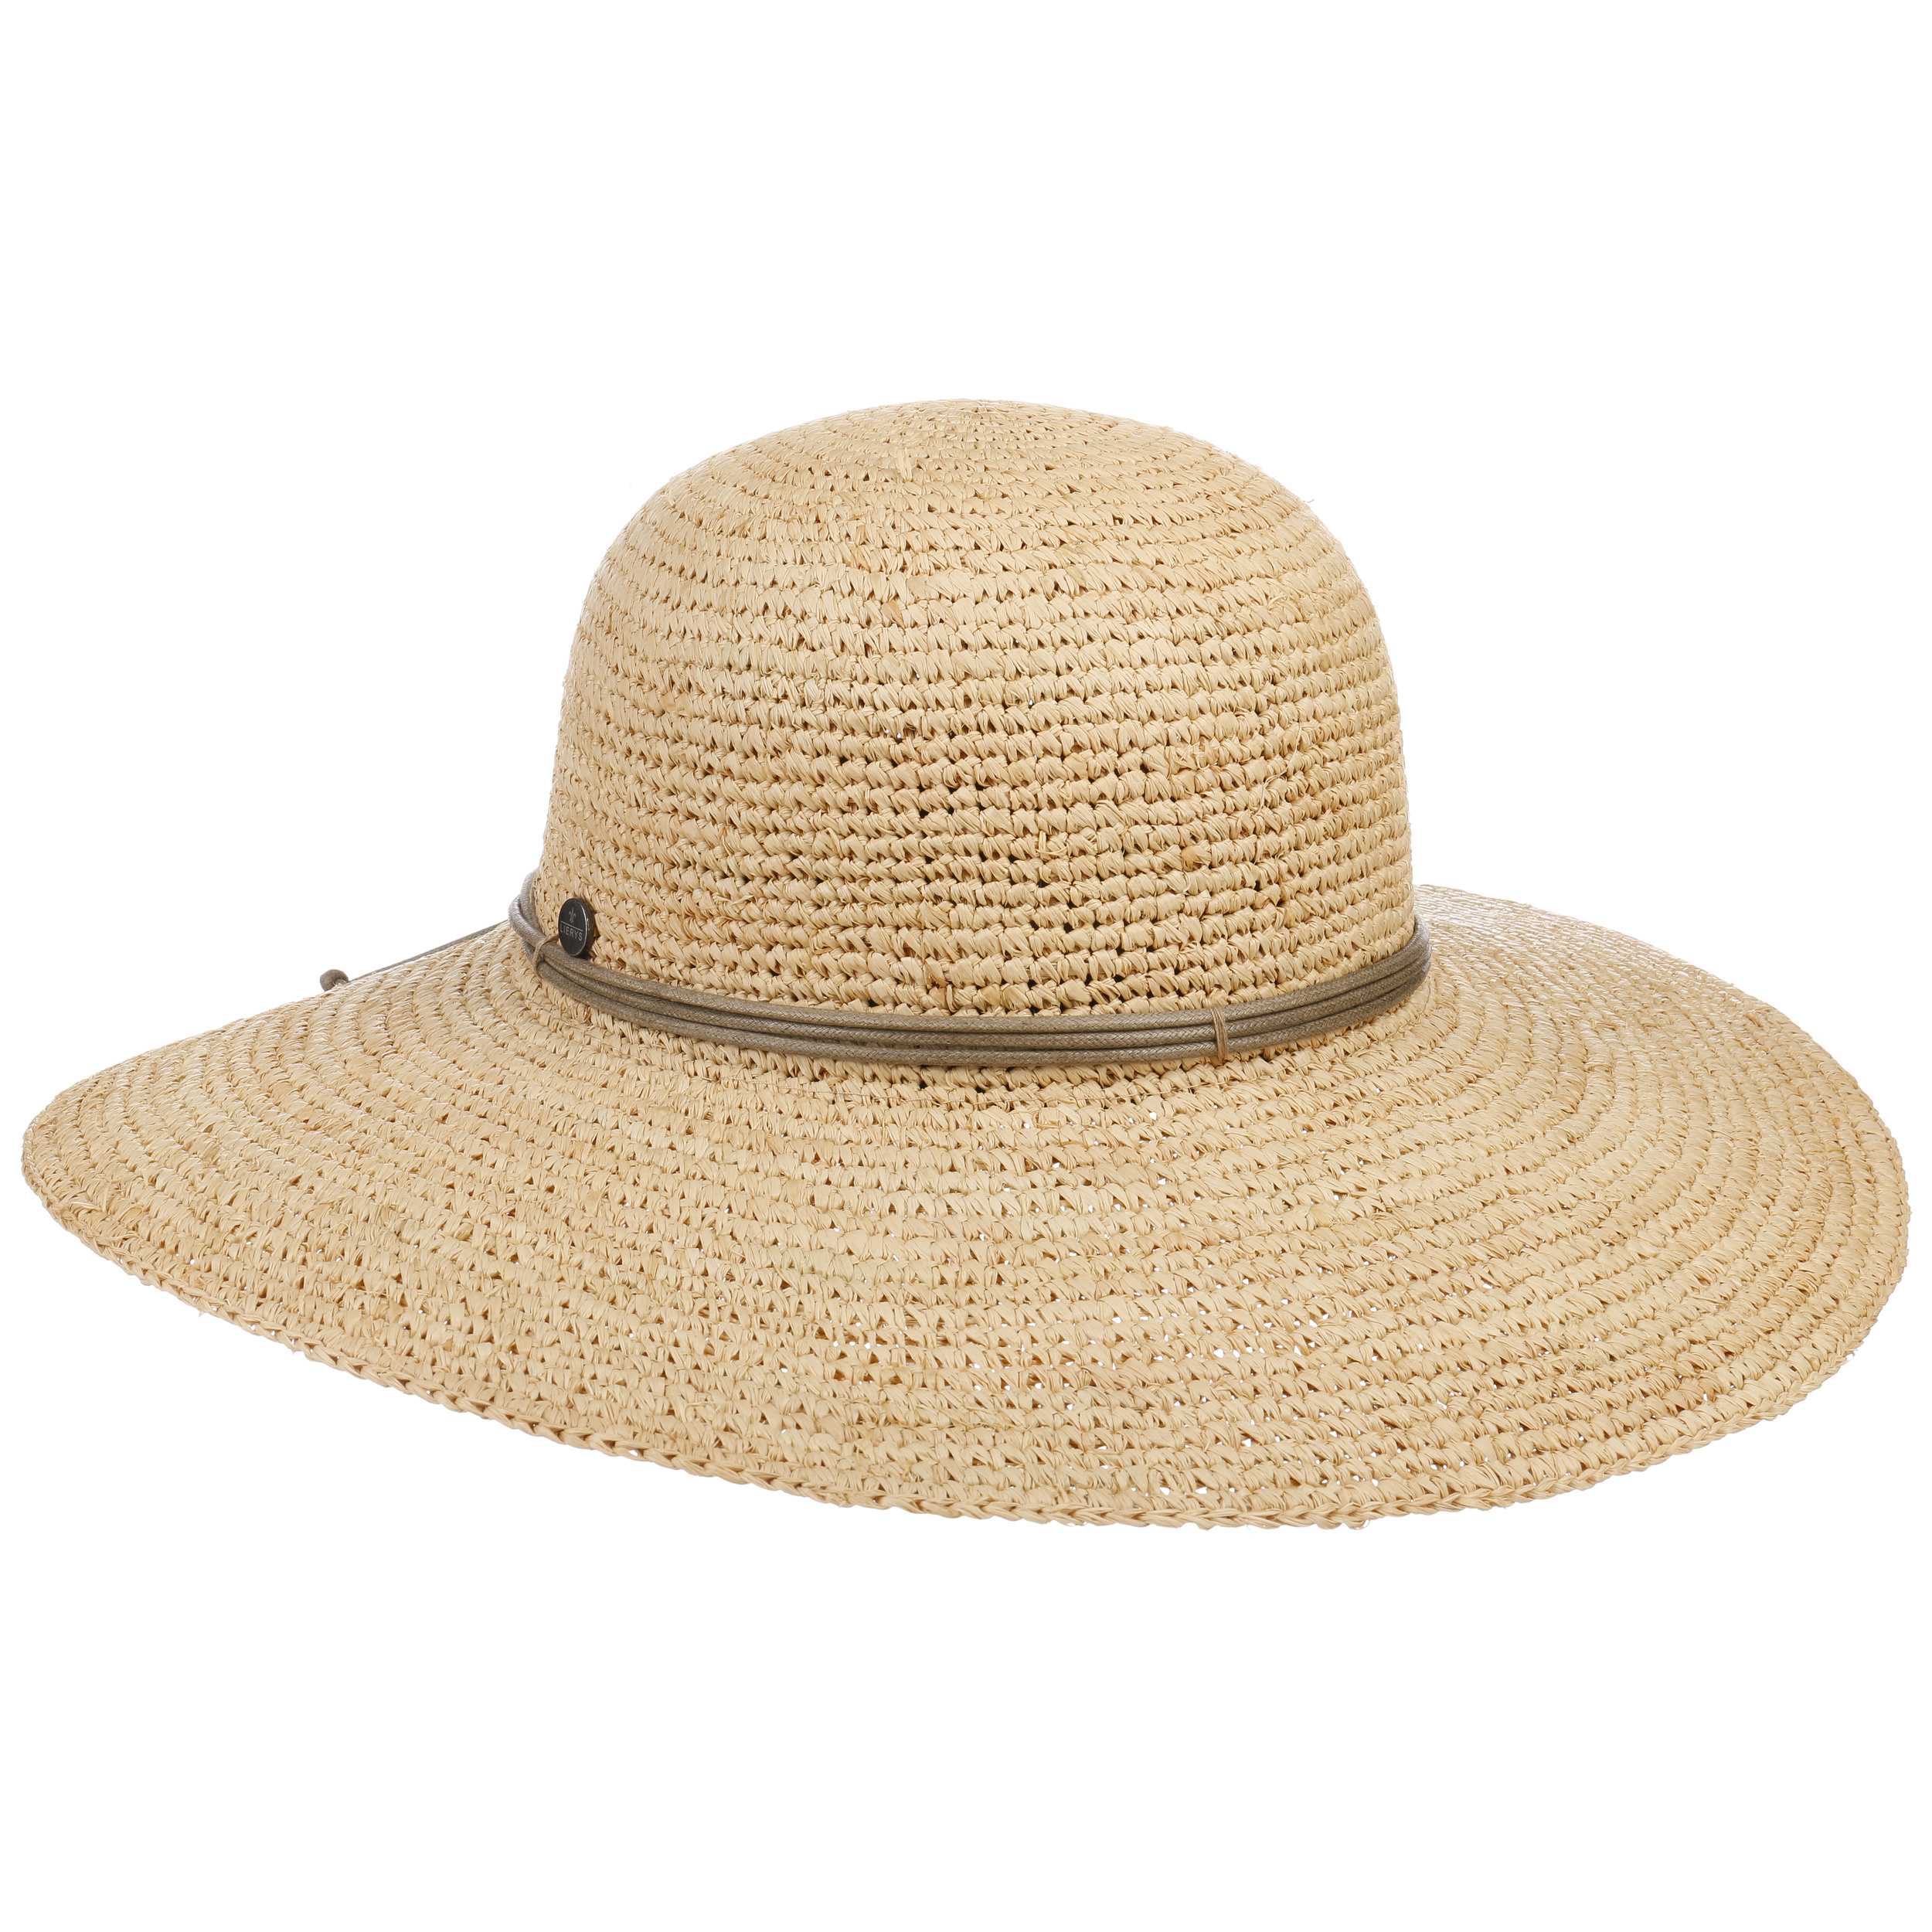 RIONA Sombrero para el sol de paja de rafia 100% raffia de verano tejido a mano y plegable para Mujeres 